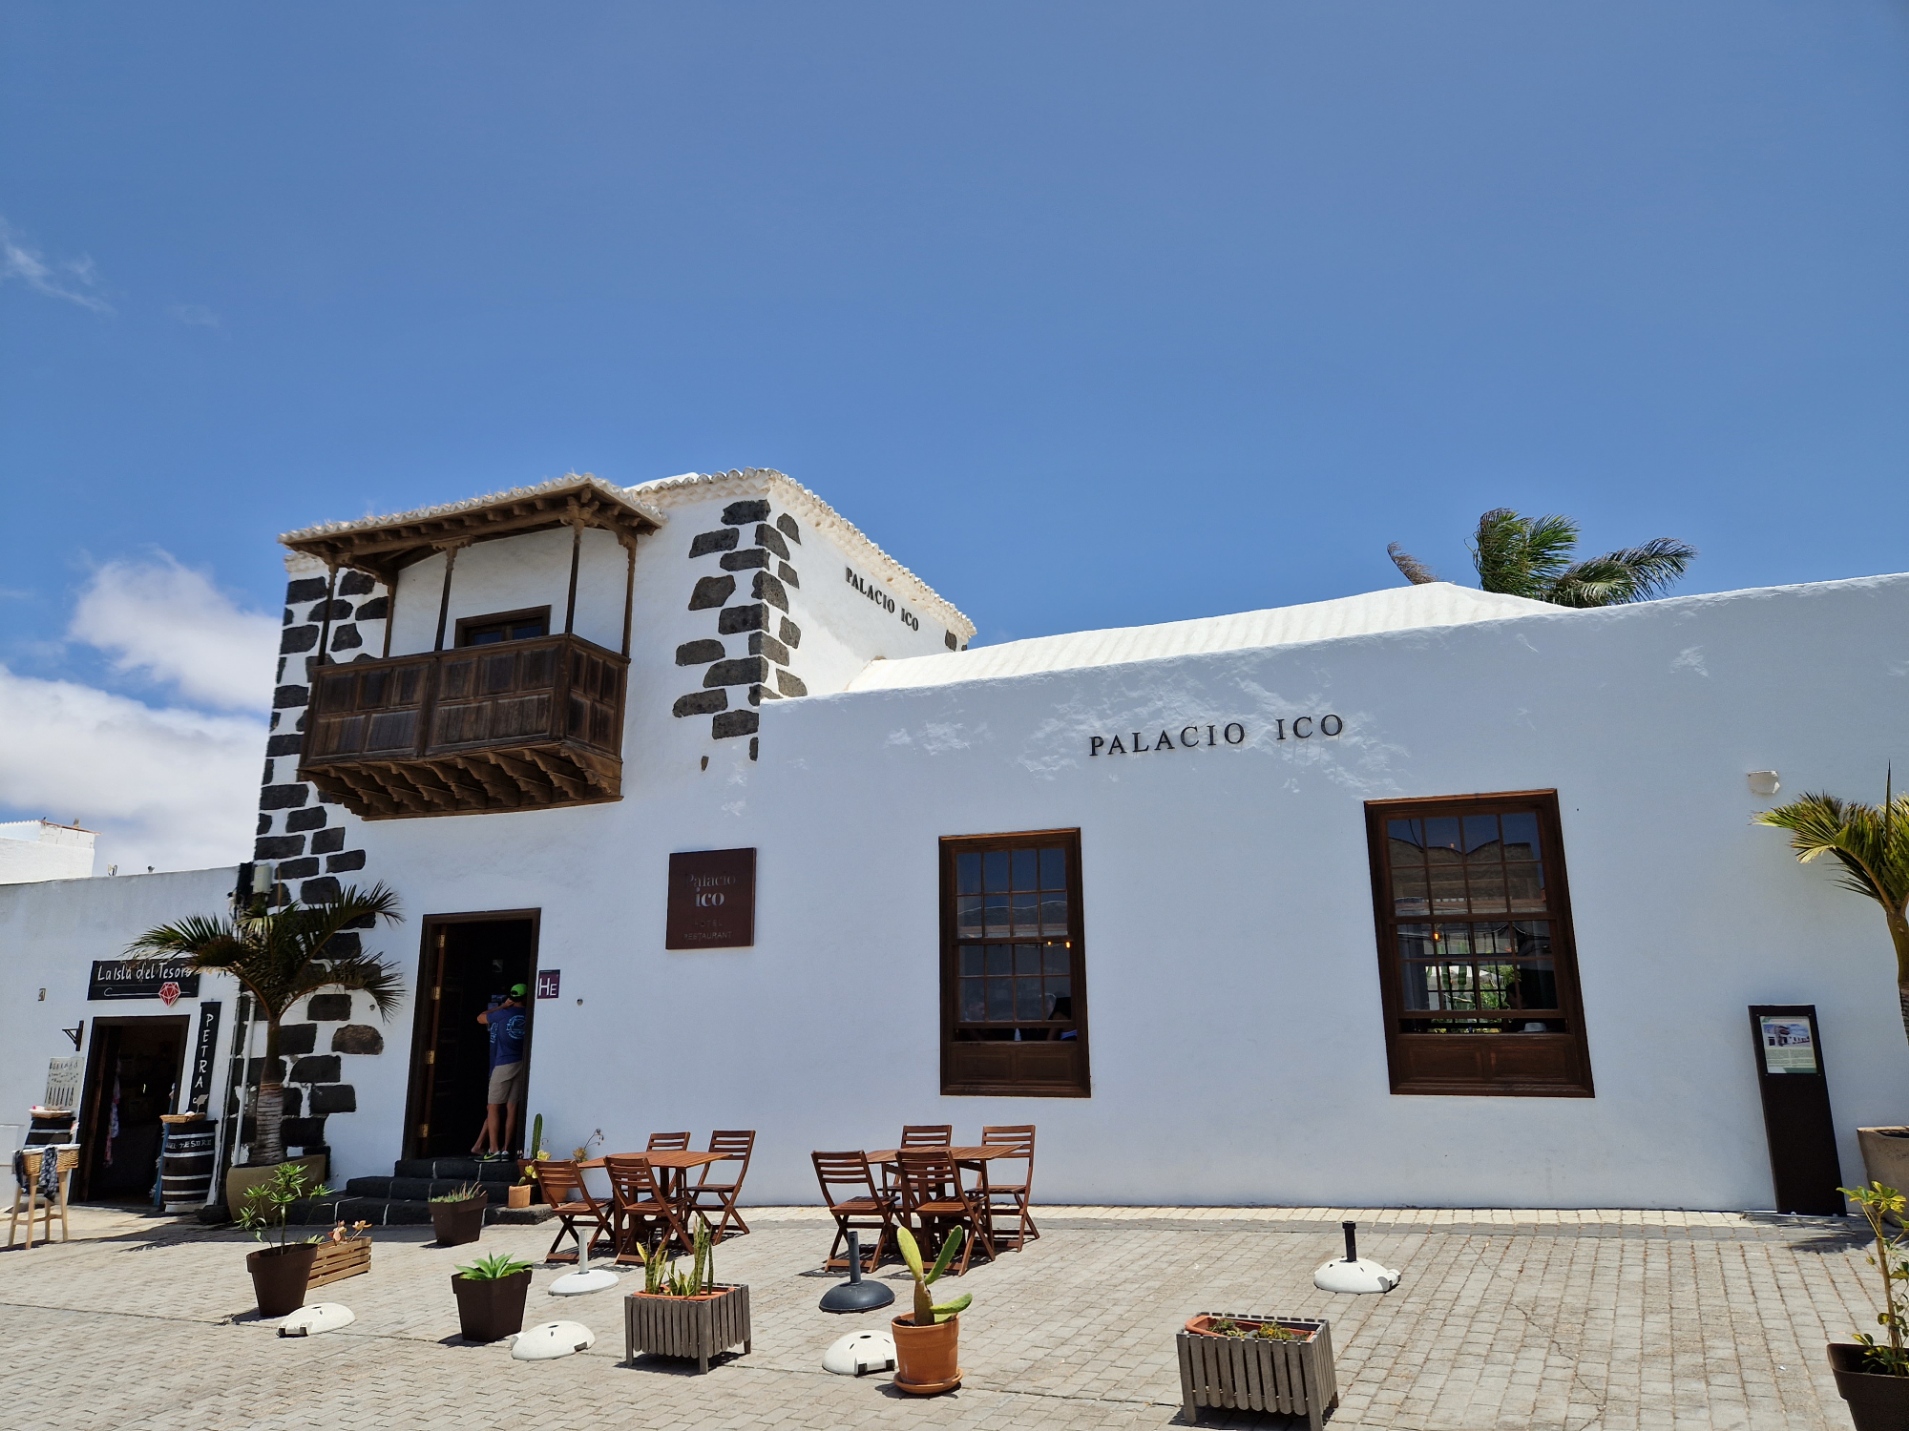 Palacio Ico, el hotel gastronómico de Lanzarote (Villa de Teguise), lanza su gran proyecto de cultura gastronómica “Diálogos en la Nueva Cocina Canaria”